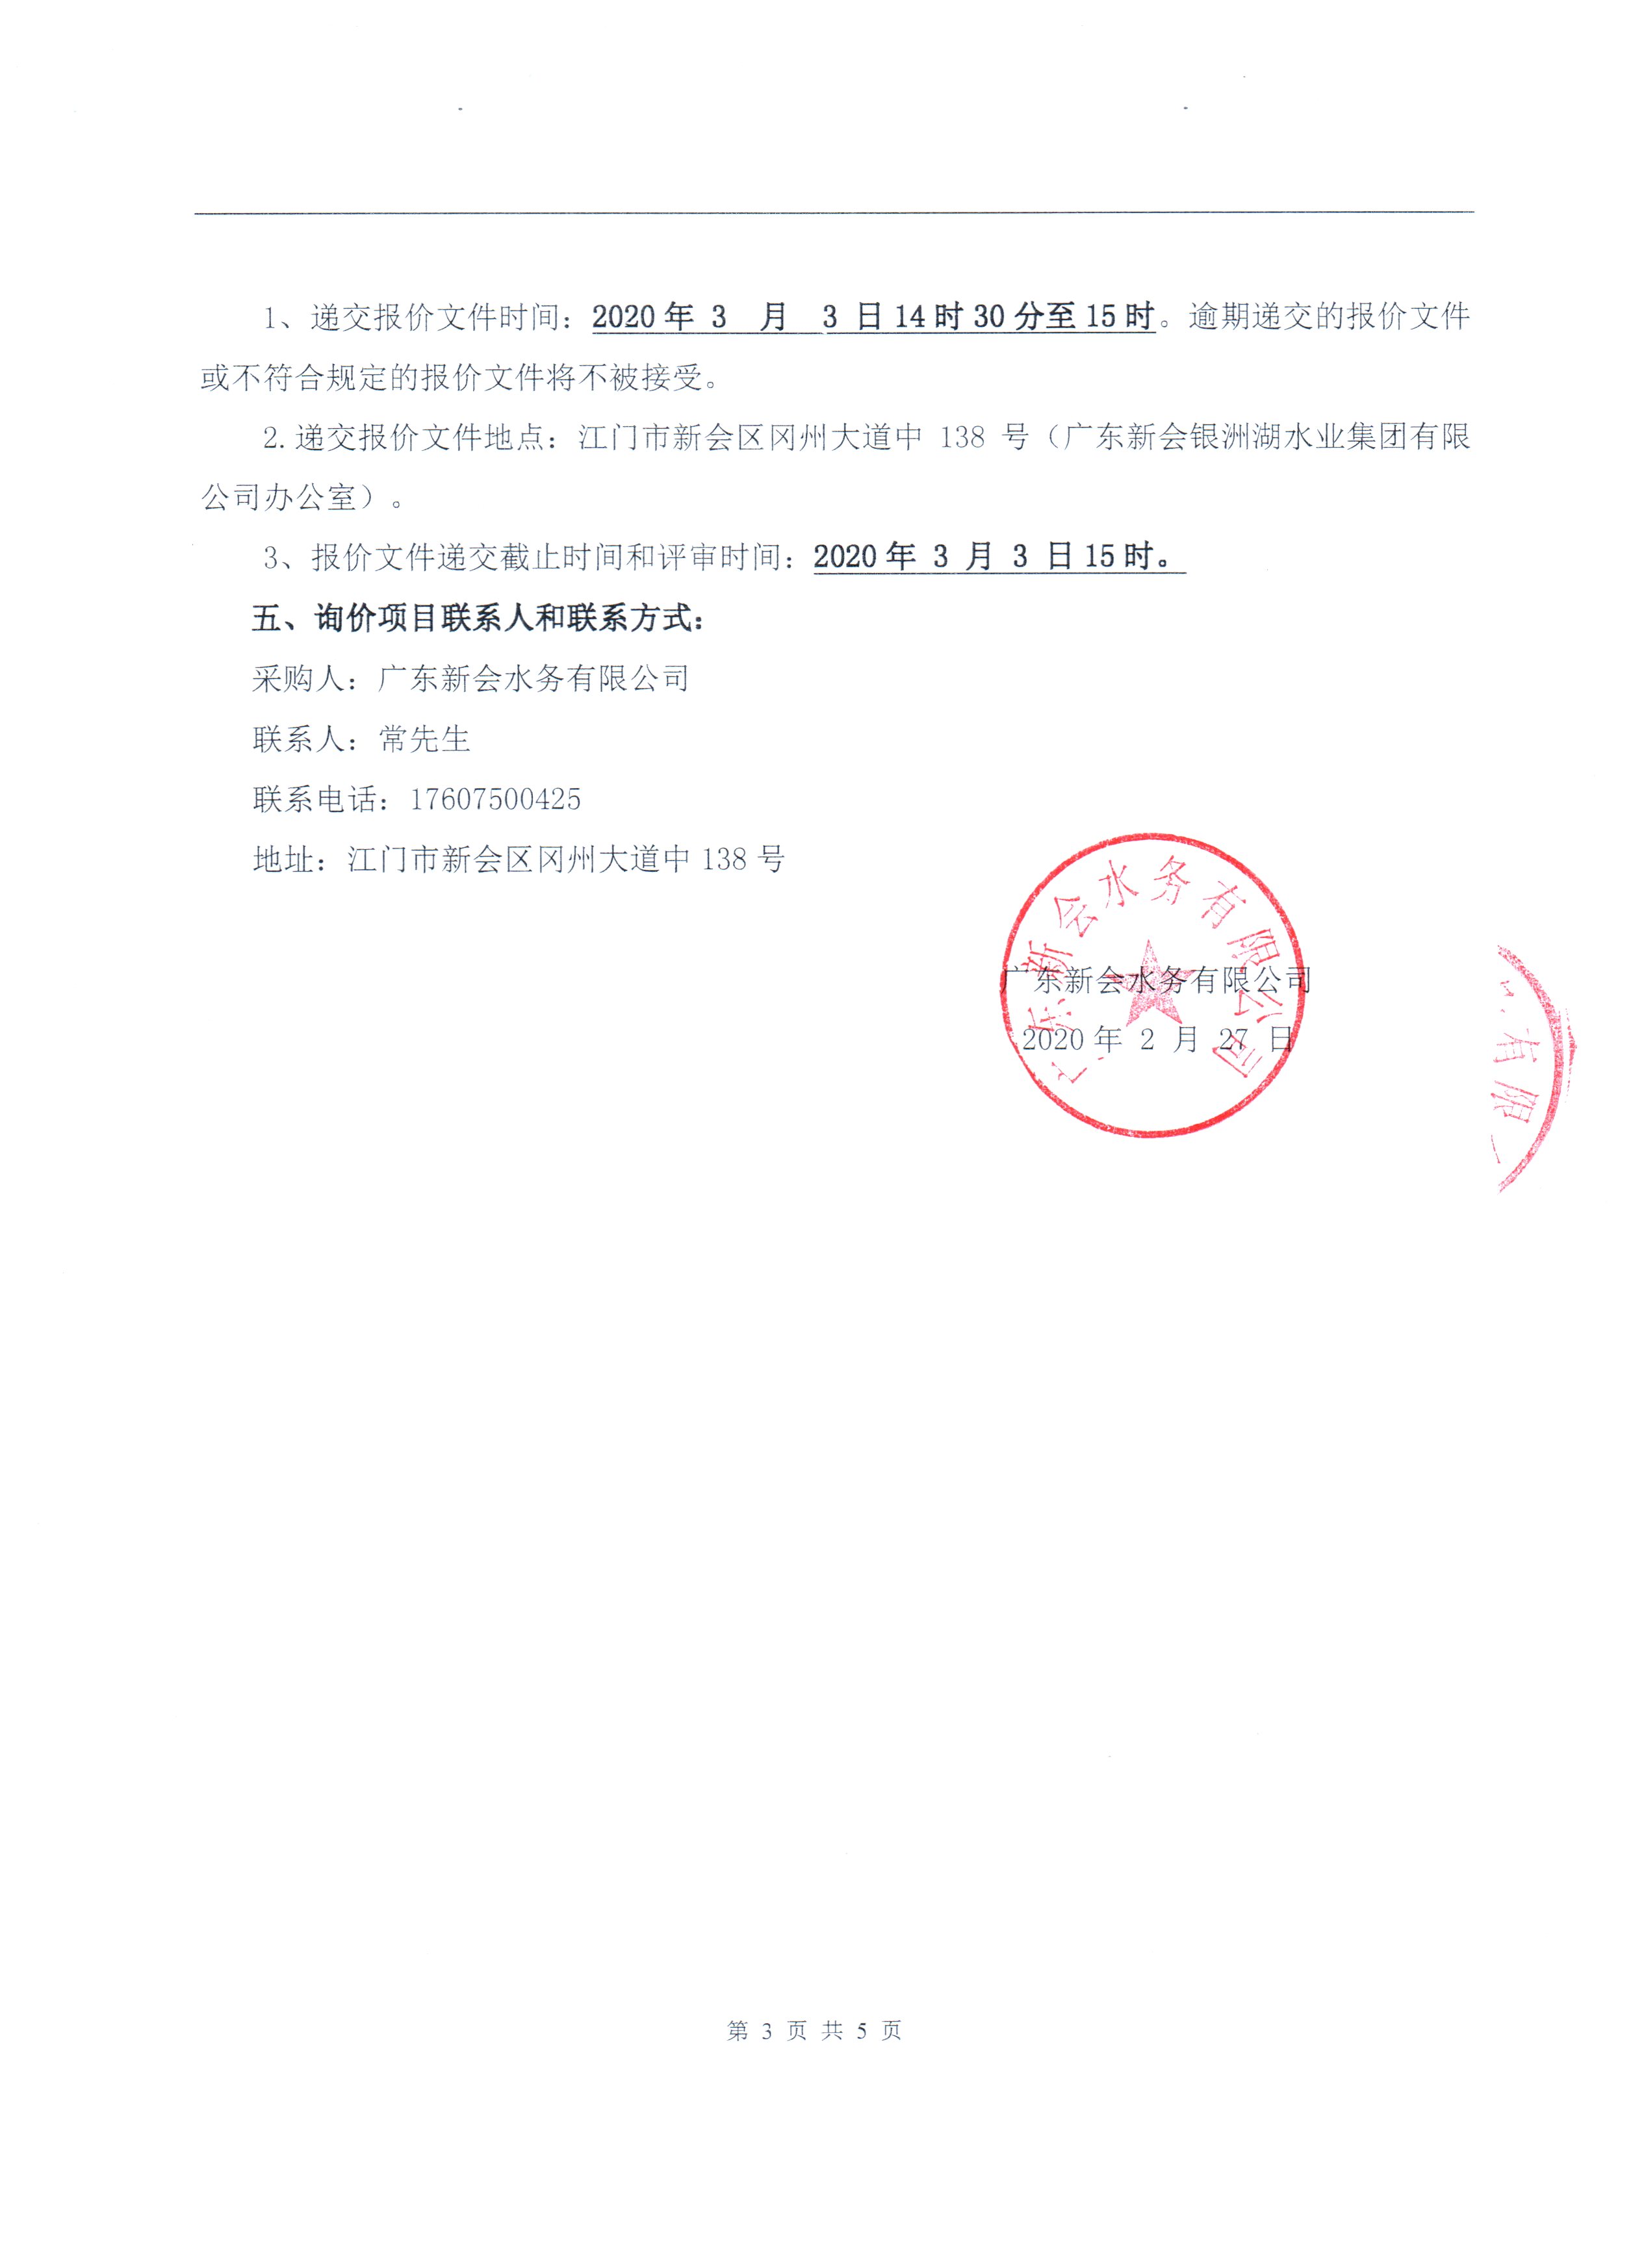 关于广东新会水务公司及其下属公司招标代理供应商候选名单确定项目的公告图3.jpg